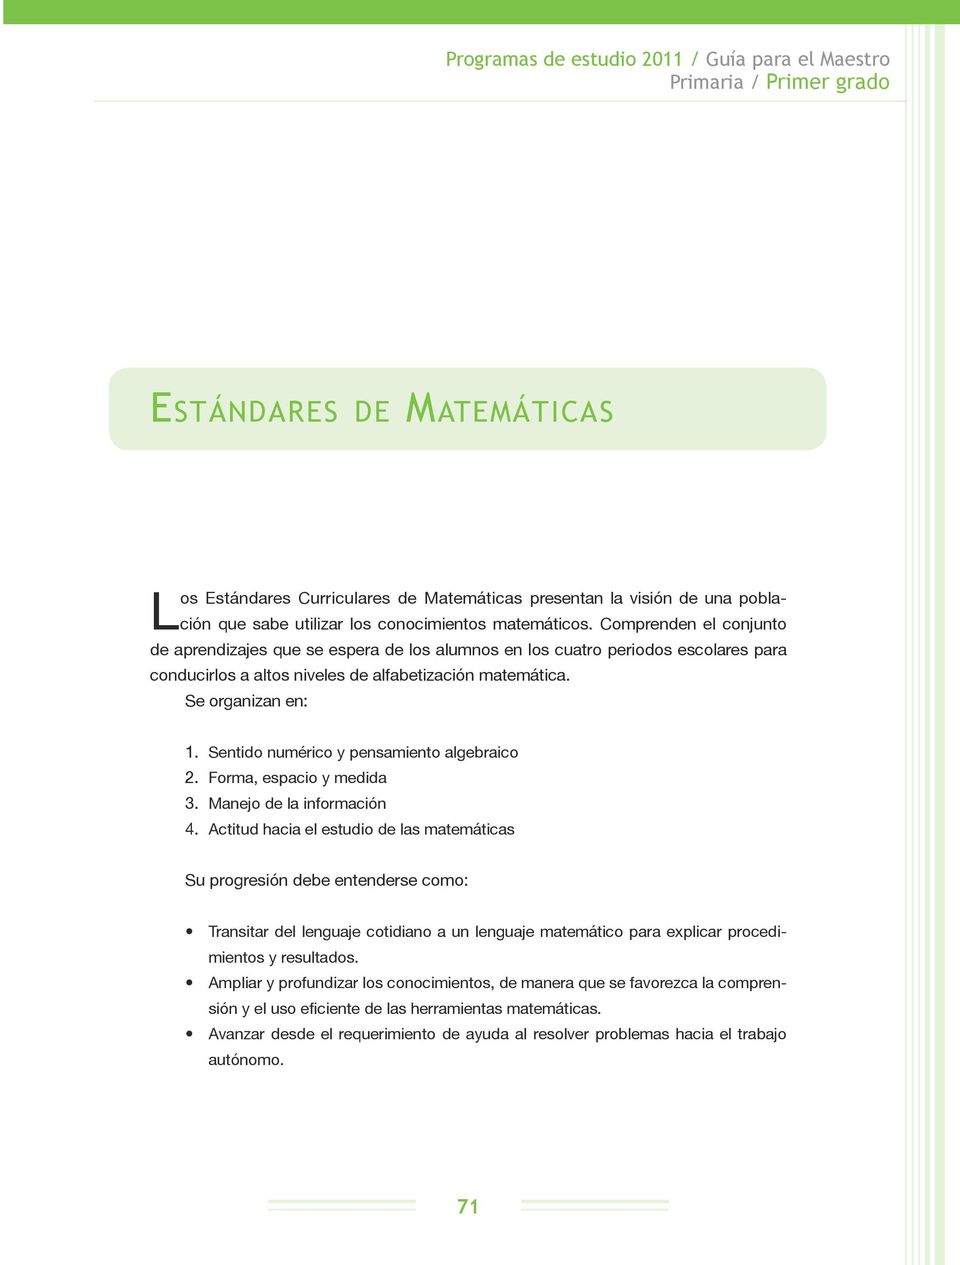 Sentido numérico y pensamiento algebraico 2. Forma, espacio y medida 3. Manejo de la información 4.